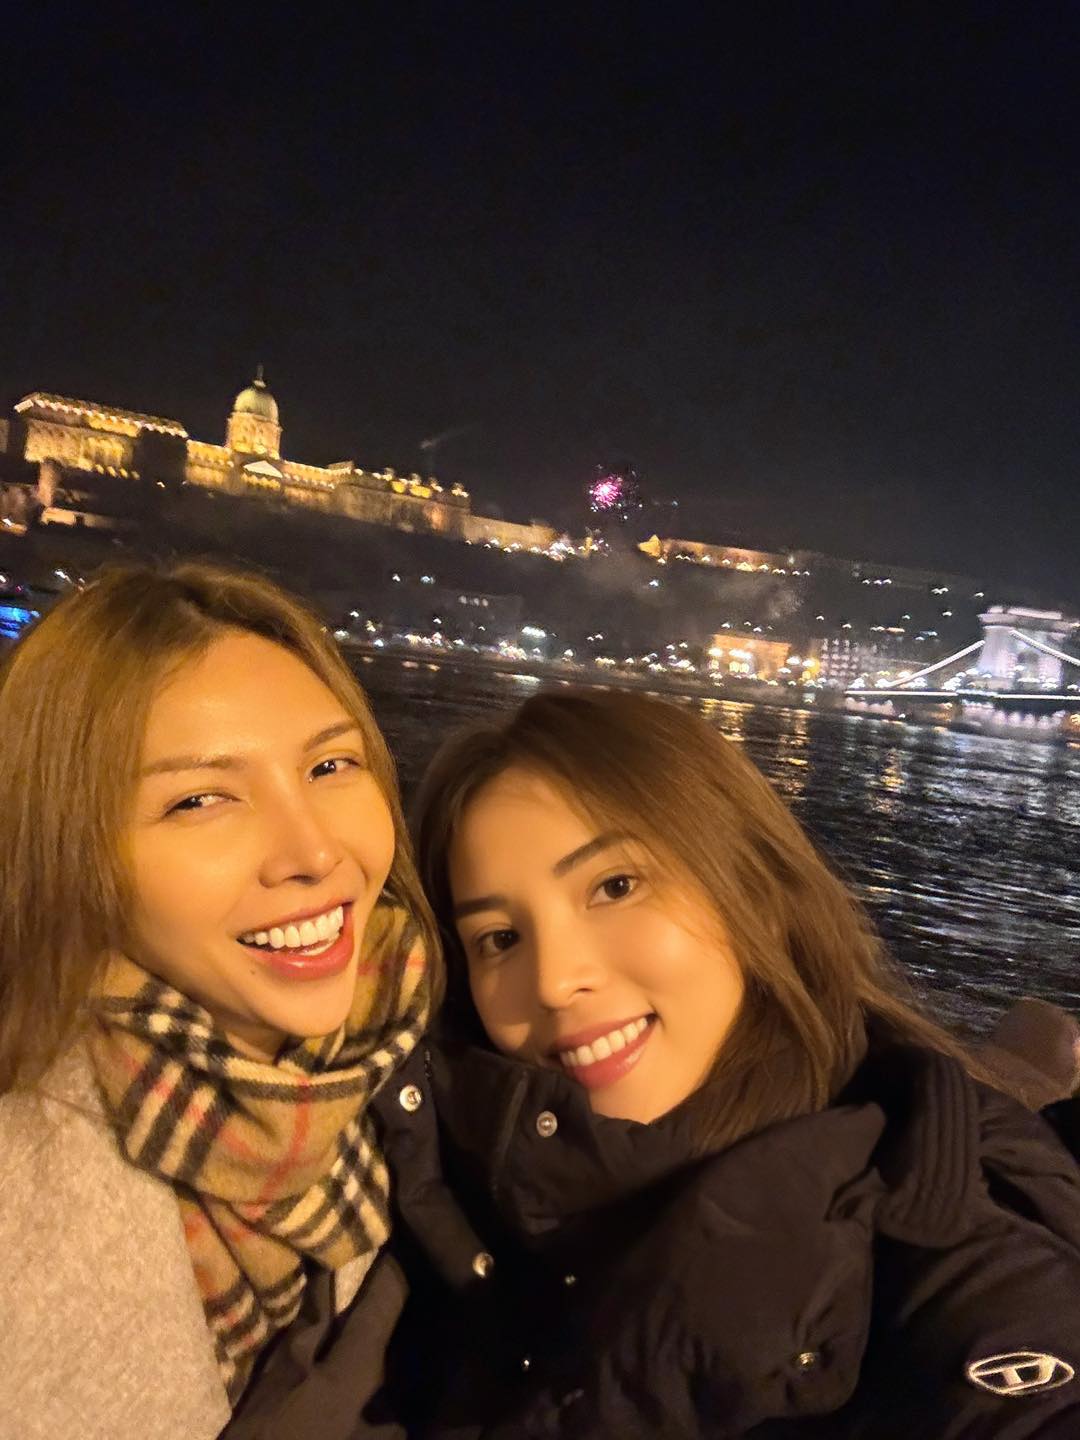 Cặp đôi sao nữ Việt hơn kém 8 tuổi nhiều năm đón năm mới cùng nhau, công khai 'dang iu' cực ngọt ngào - ảnh 2